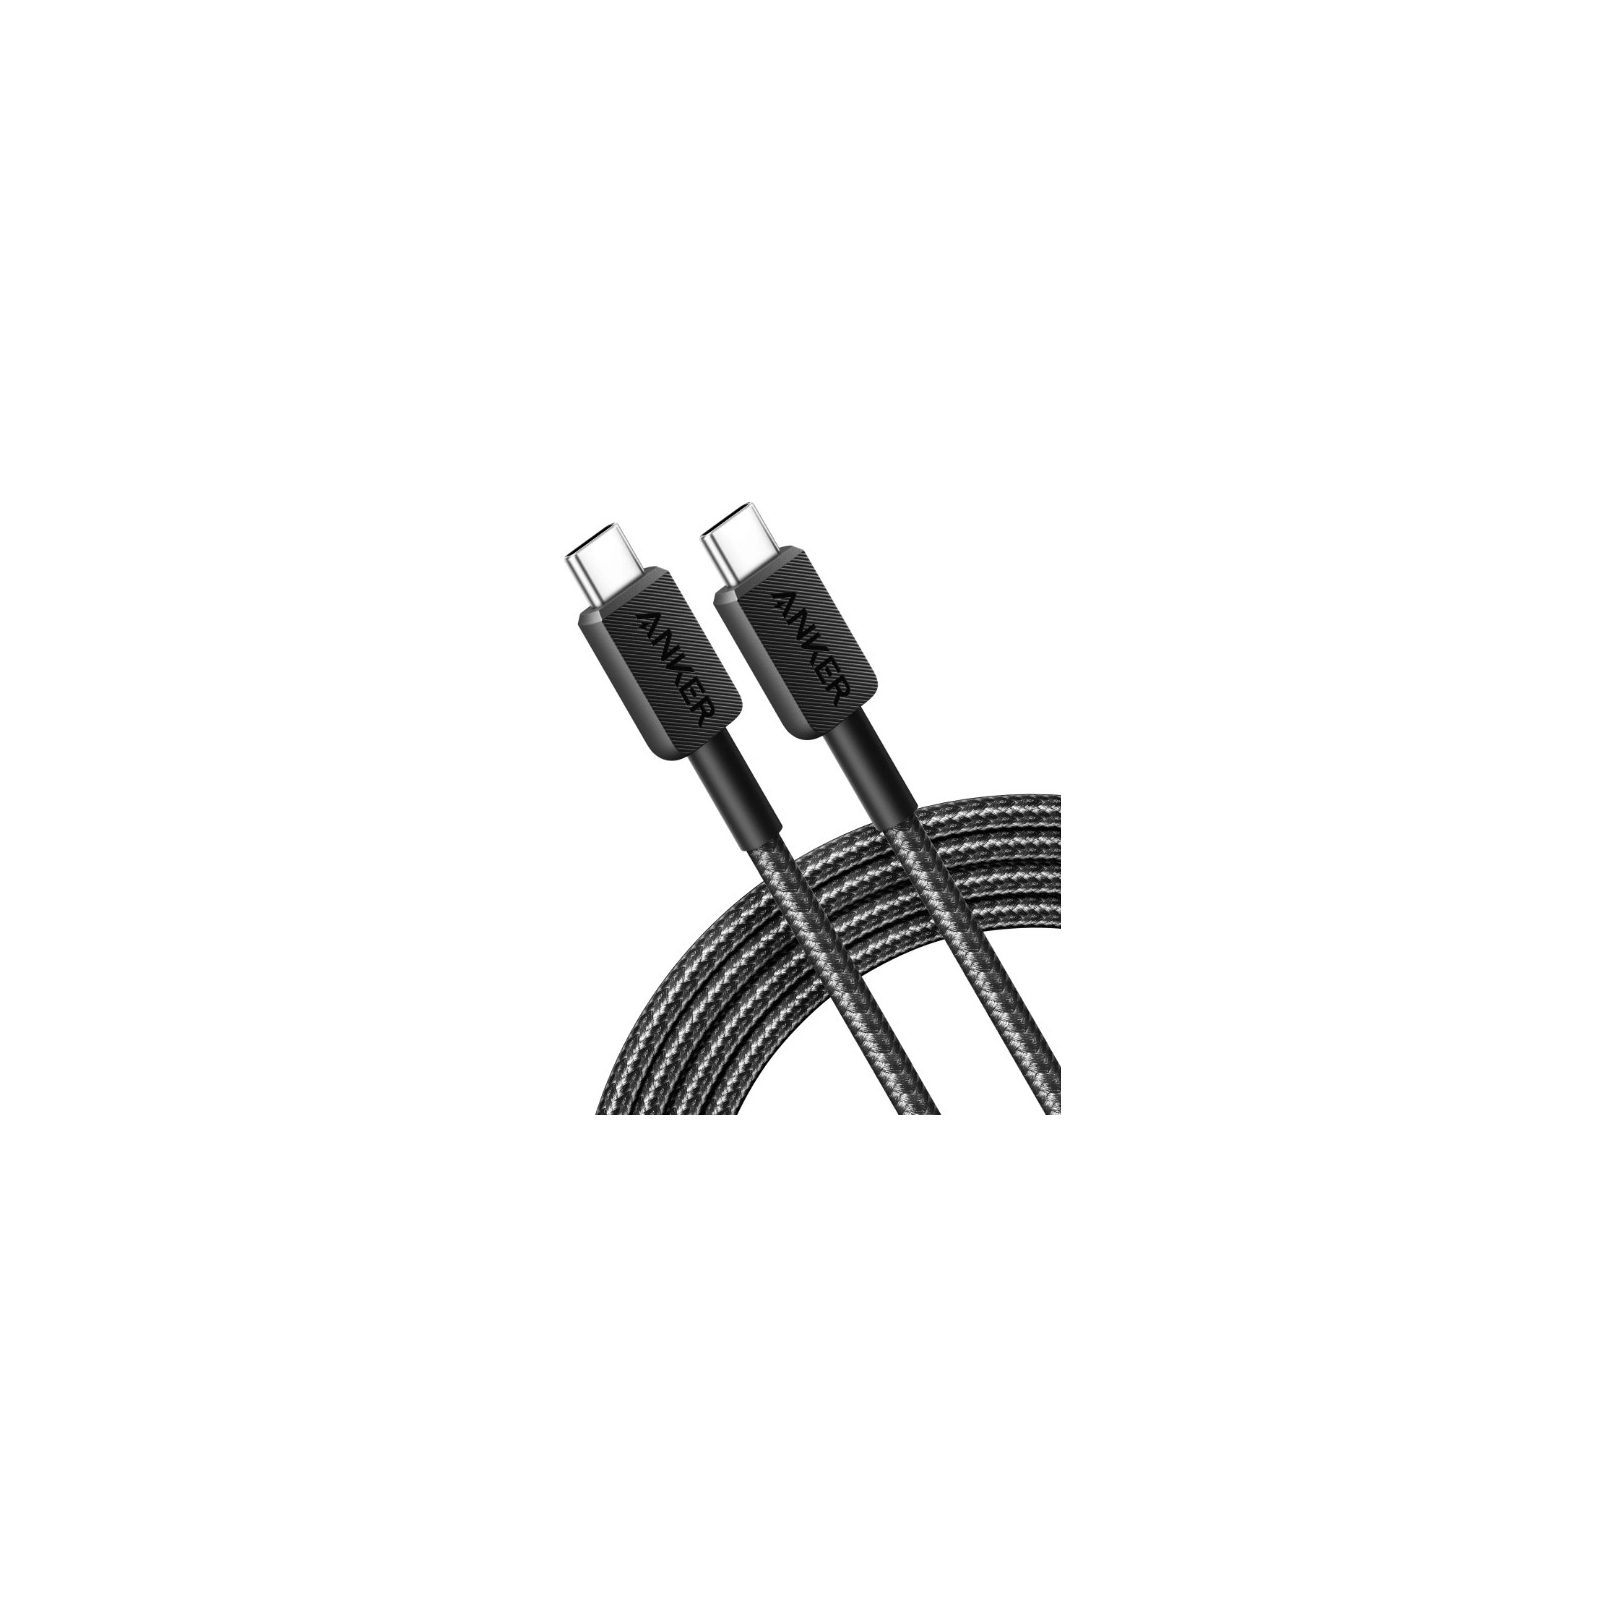 Дата кабель USB-C to USB-C 1.8m 322 White Anker (A81F6H21) изображение 3